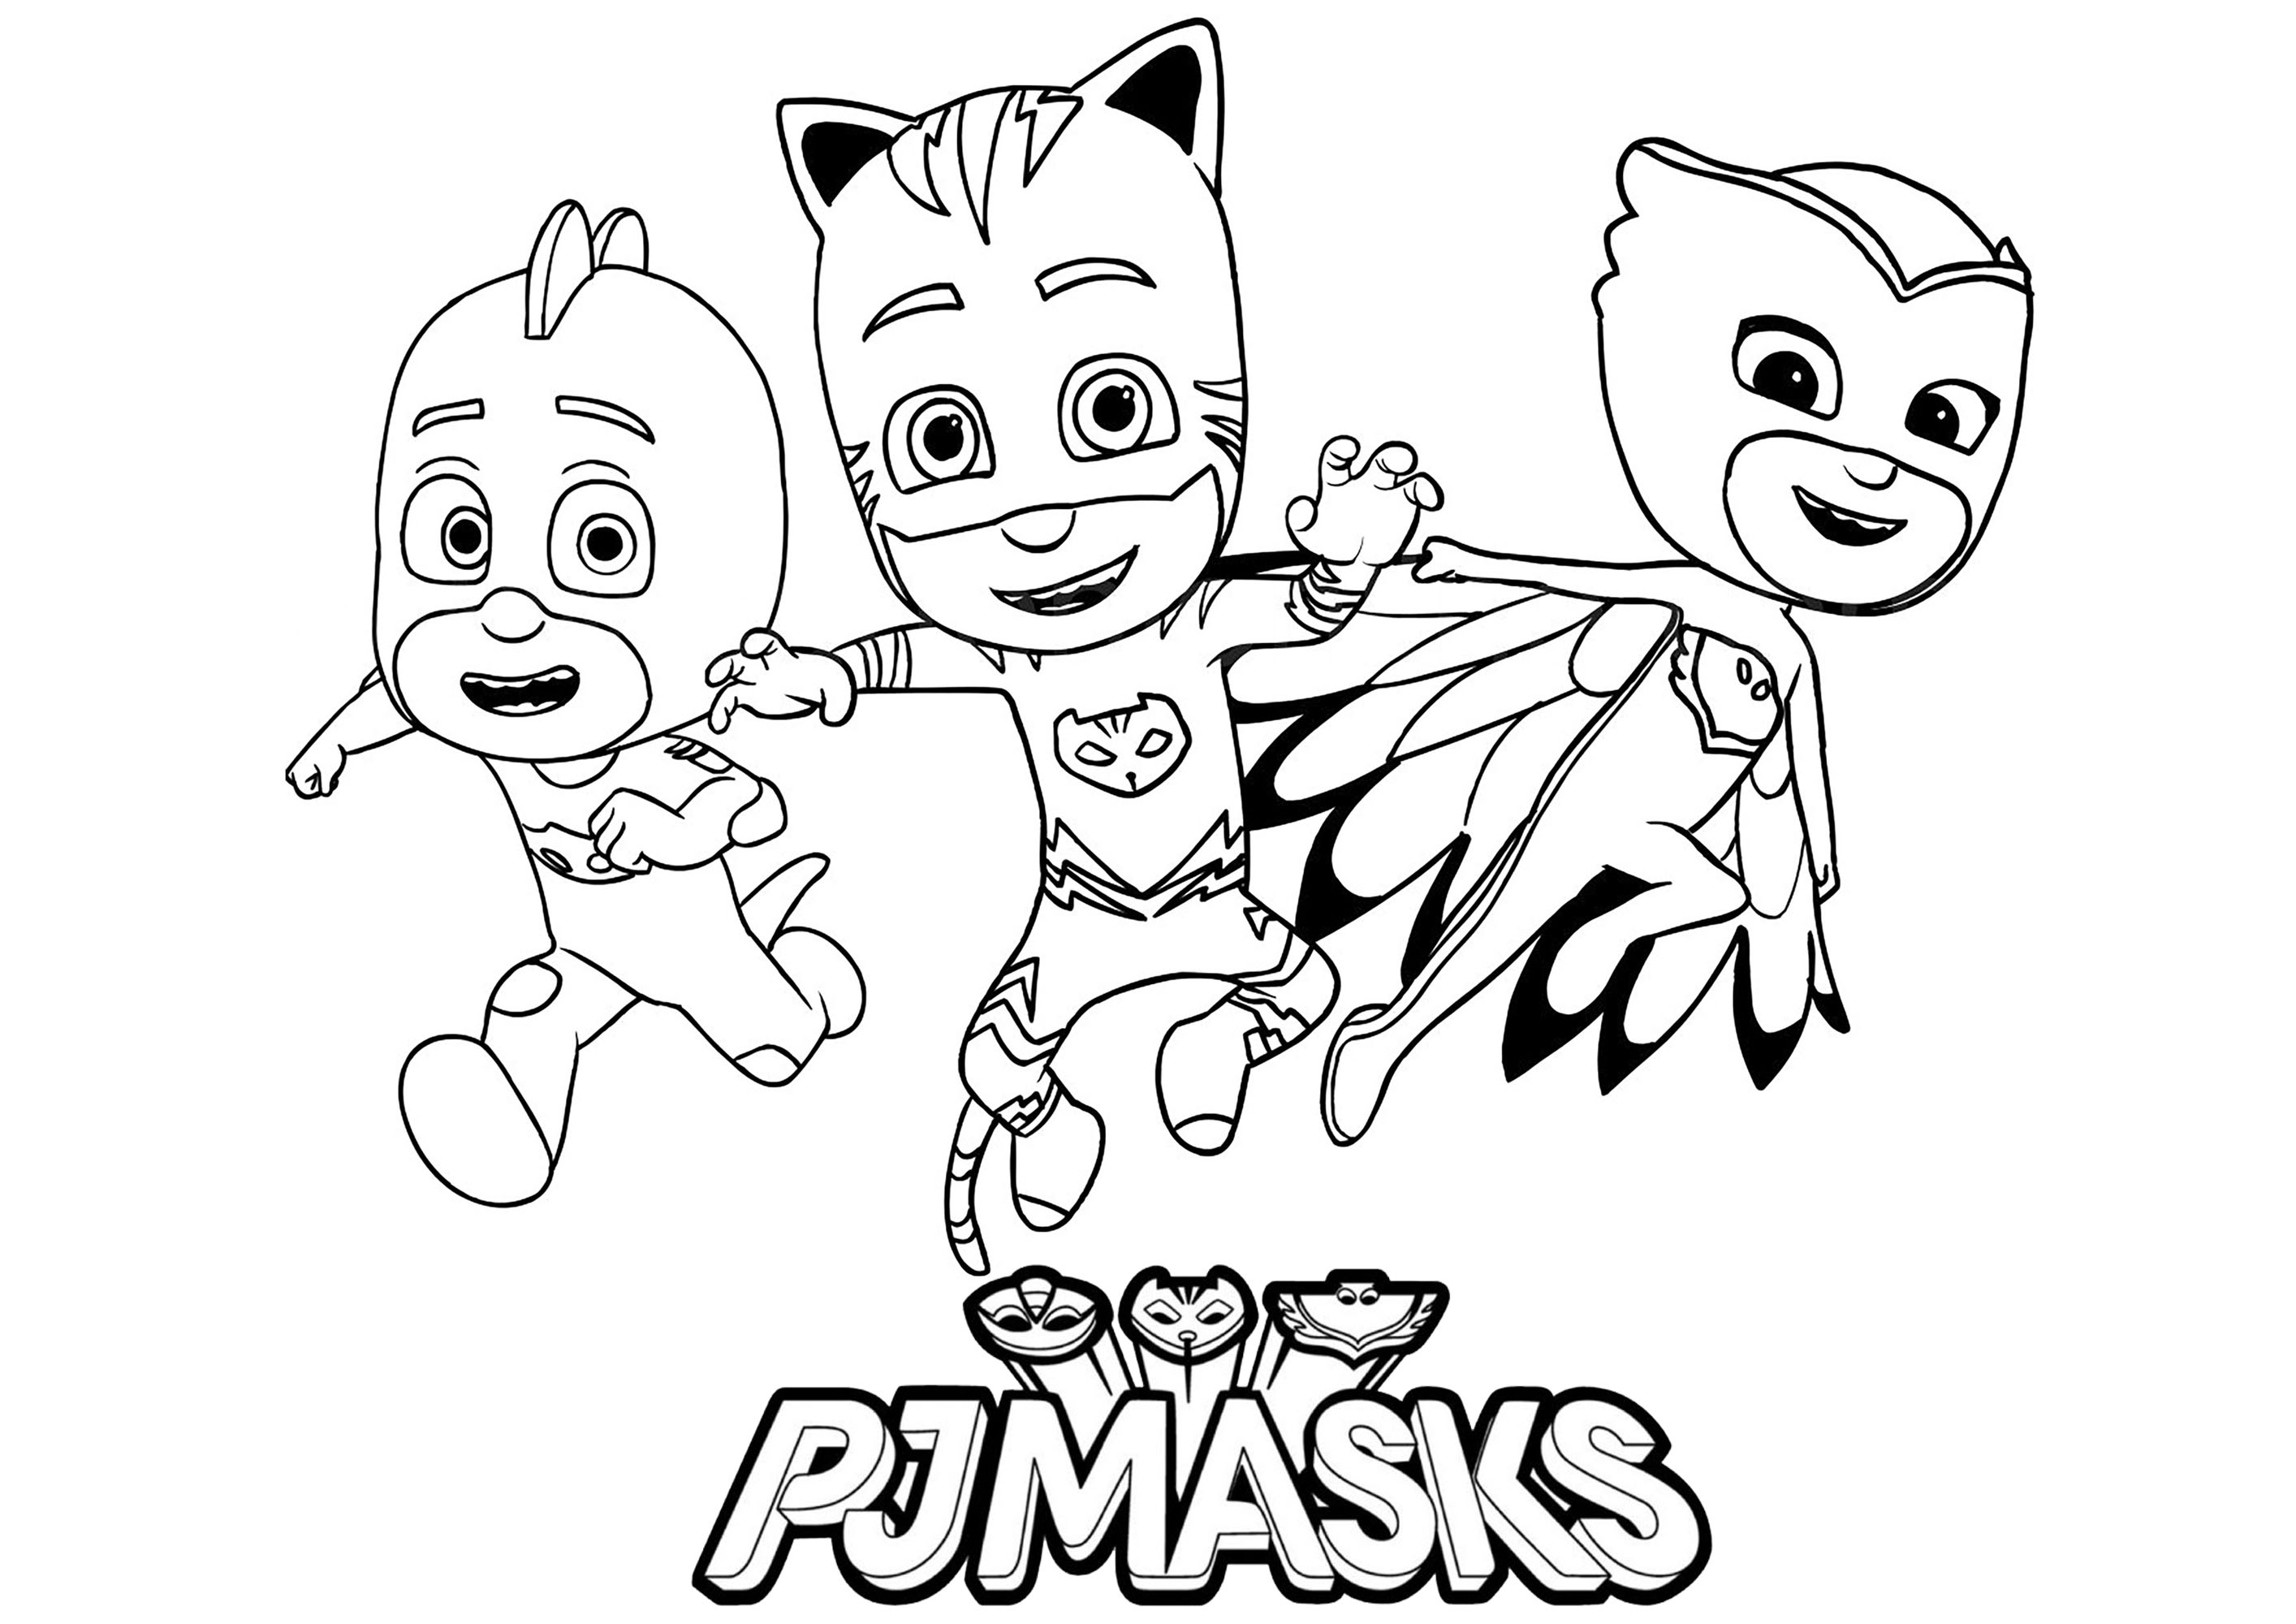 Colorear los 3 personajes, con el logotipo de PJ Masks